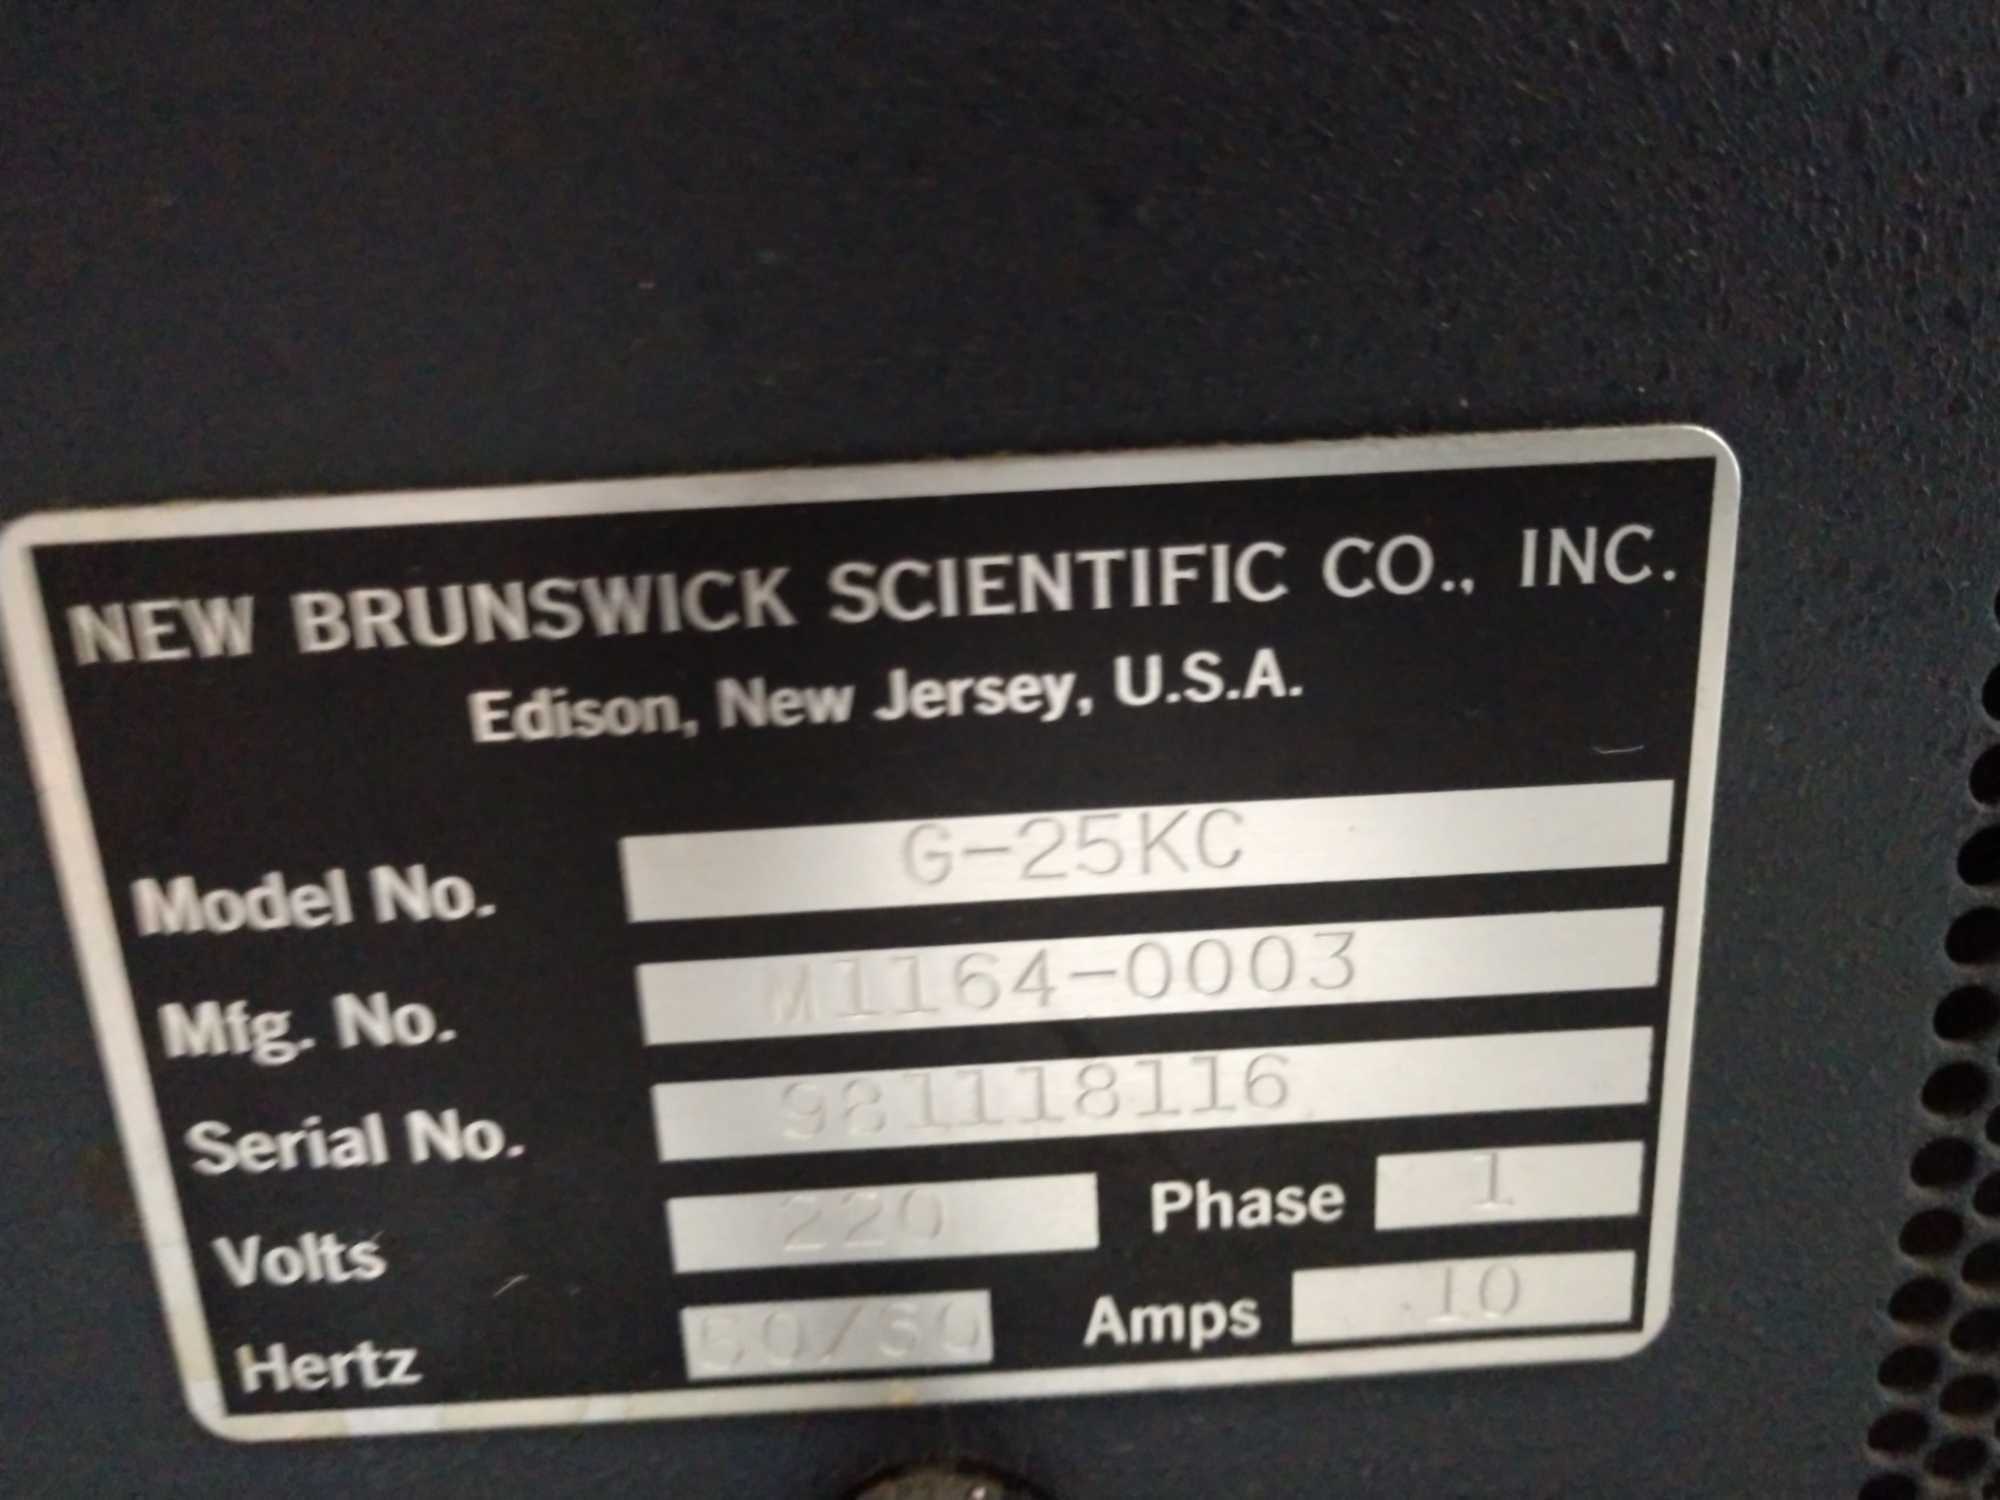 New Brunswick incubator shaker